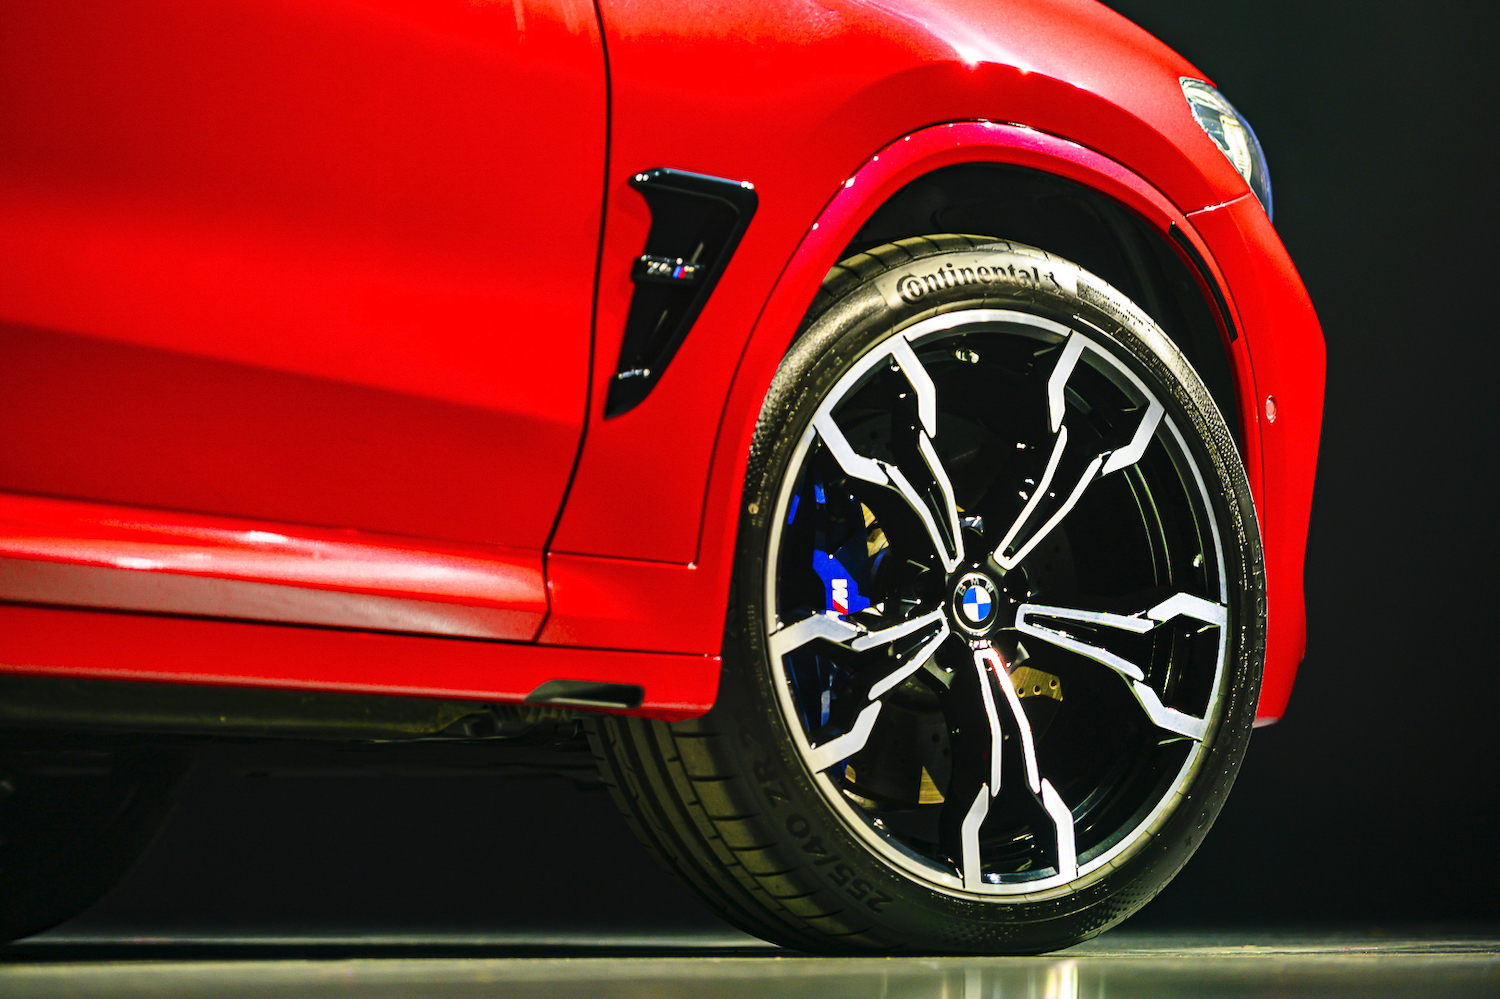 BMW X4M Competition 標配 21 吋 765 M 型輕合金輪圈。